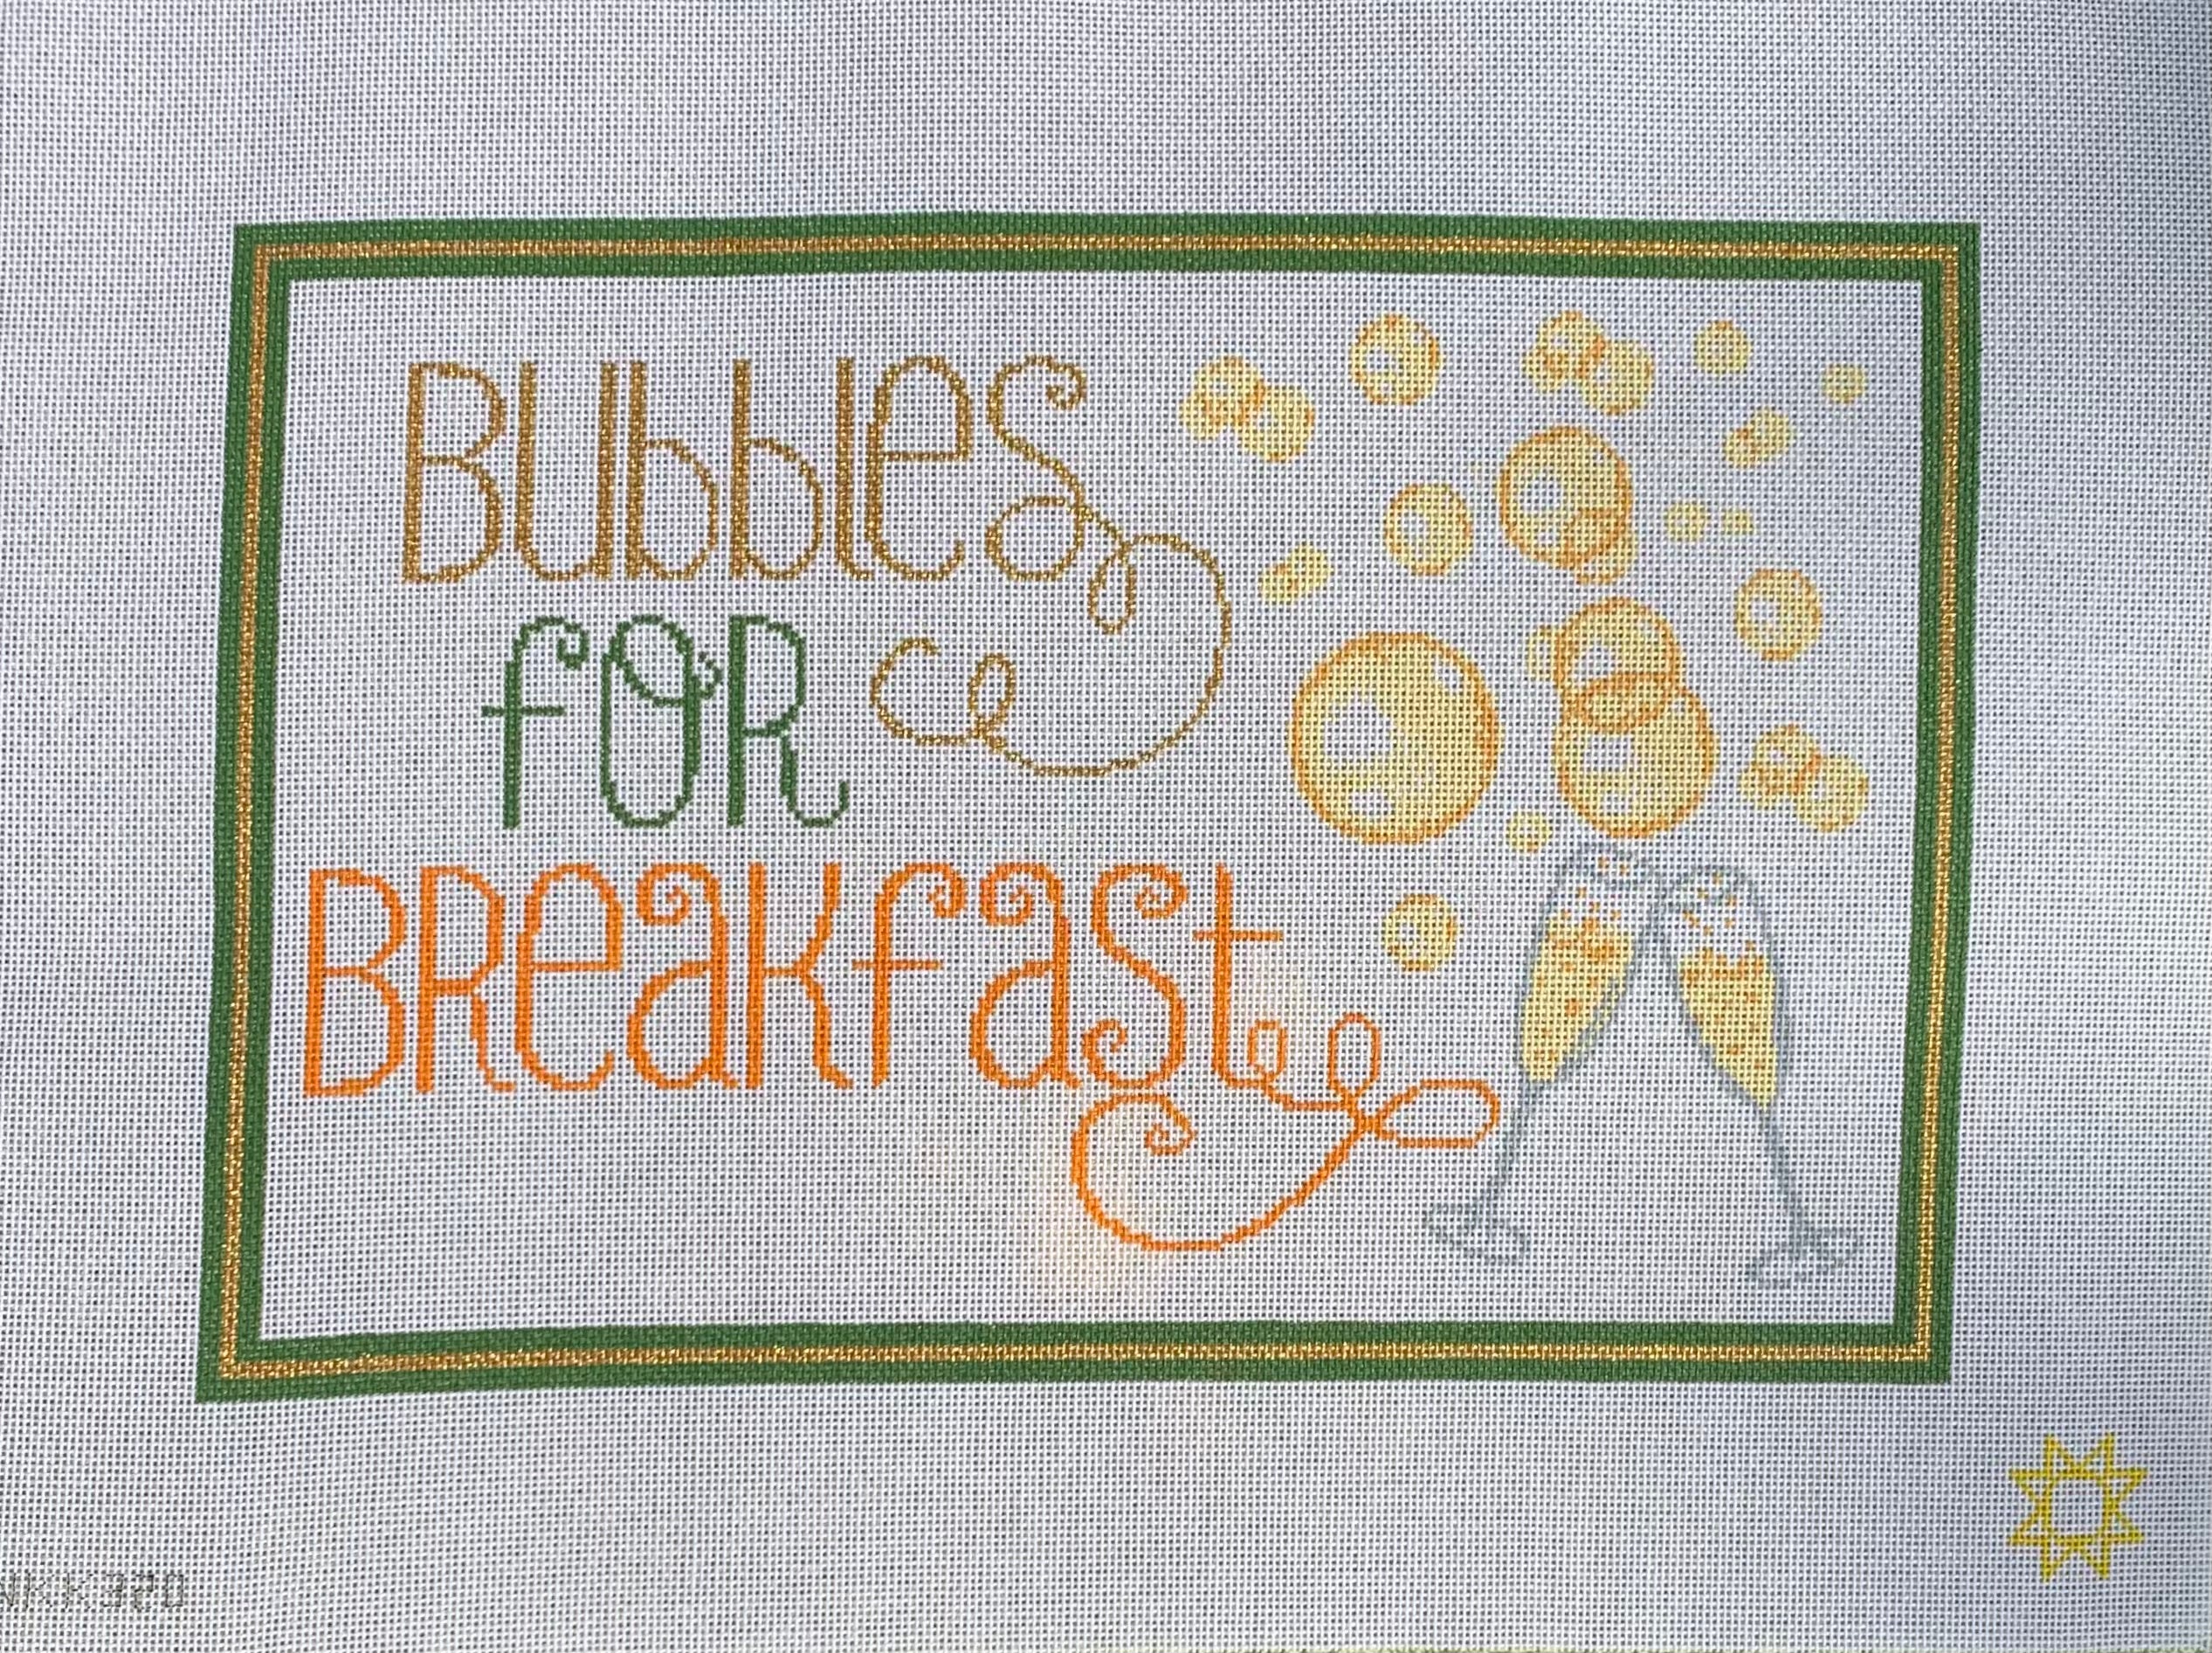 Bubbles for Breakfast NKK320